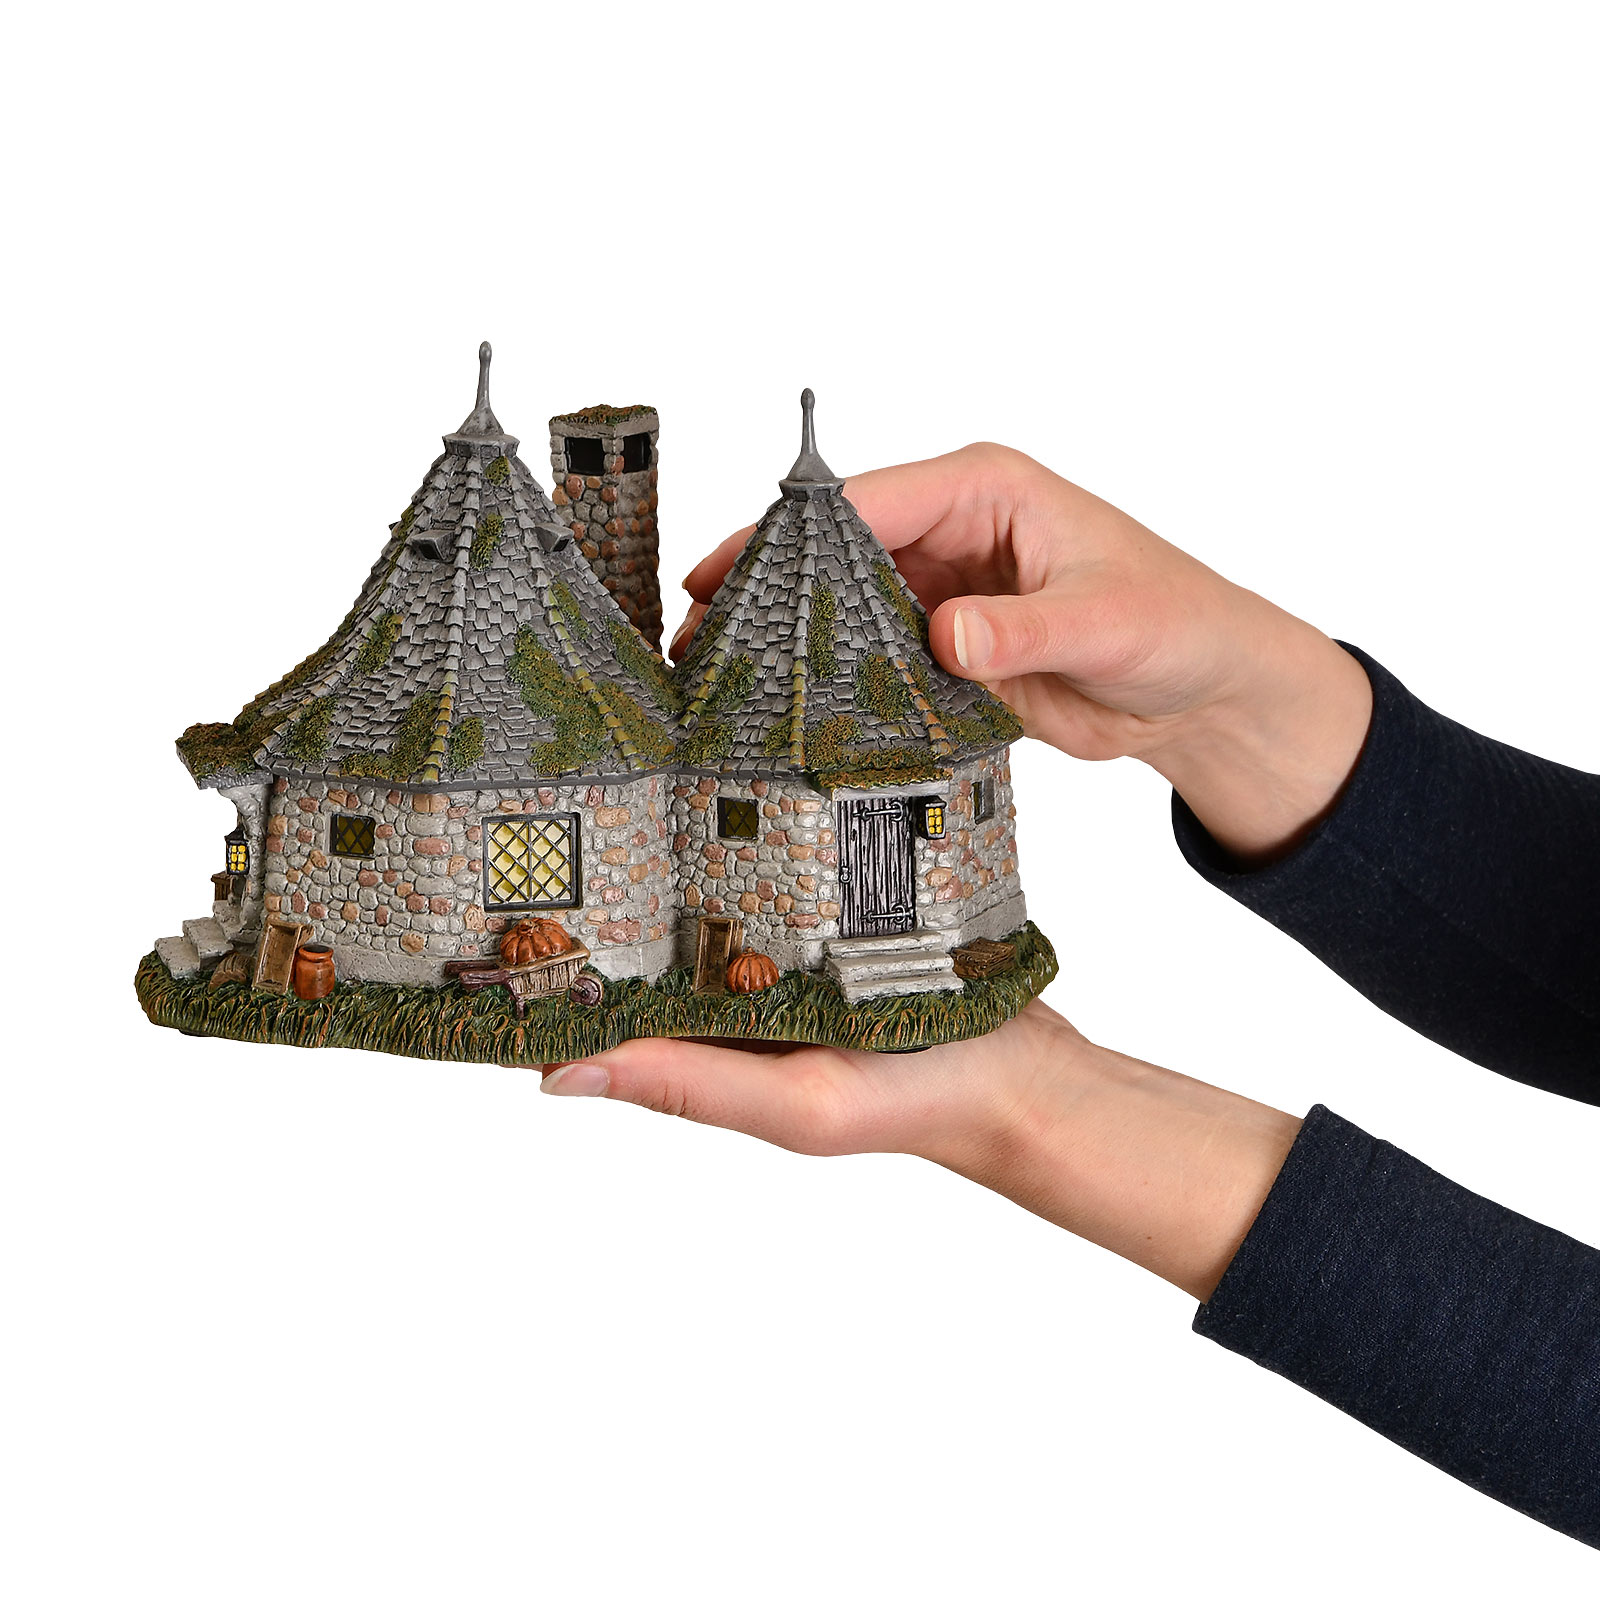 Hagrids Hut Miniatuur Replica met Verlichting - Harry Potter